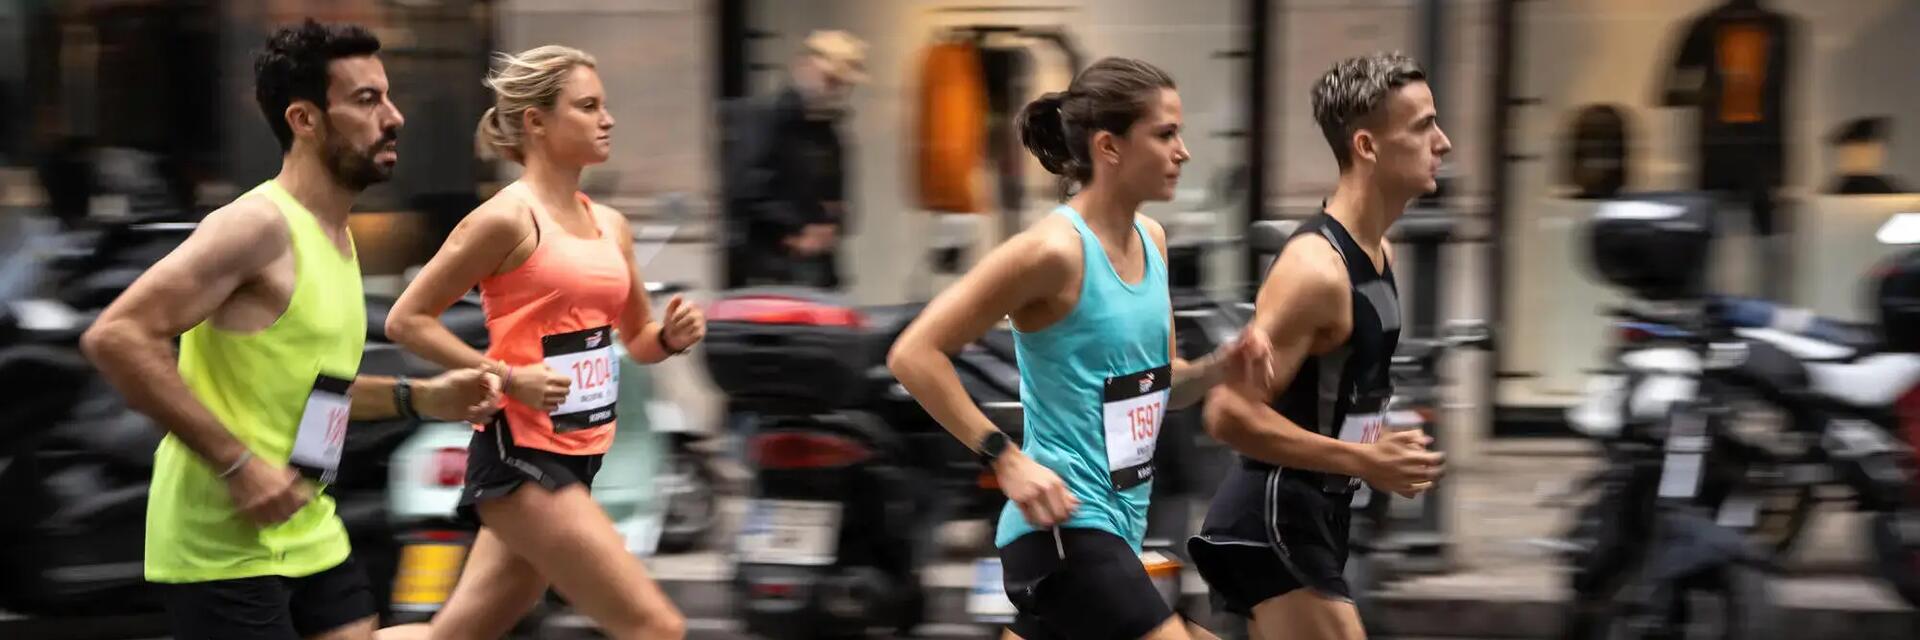 Maratón de Madrid: recorrido, horarios y resultados